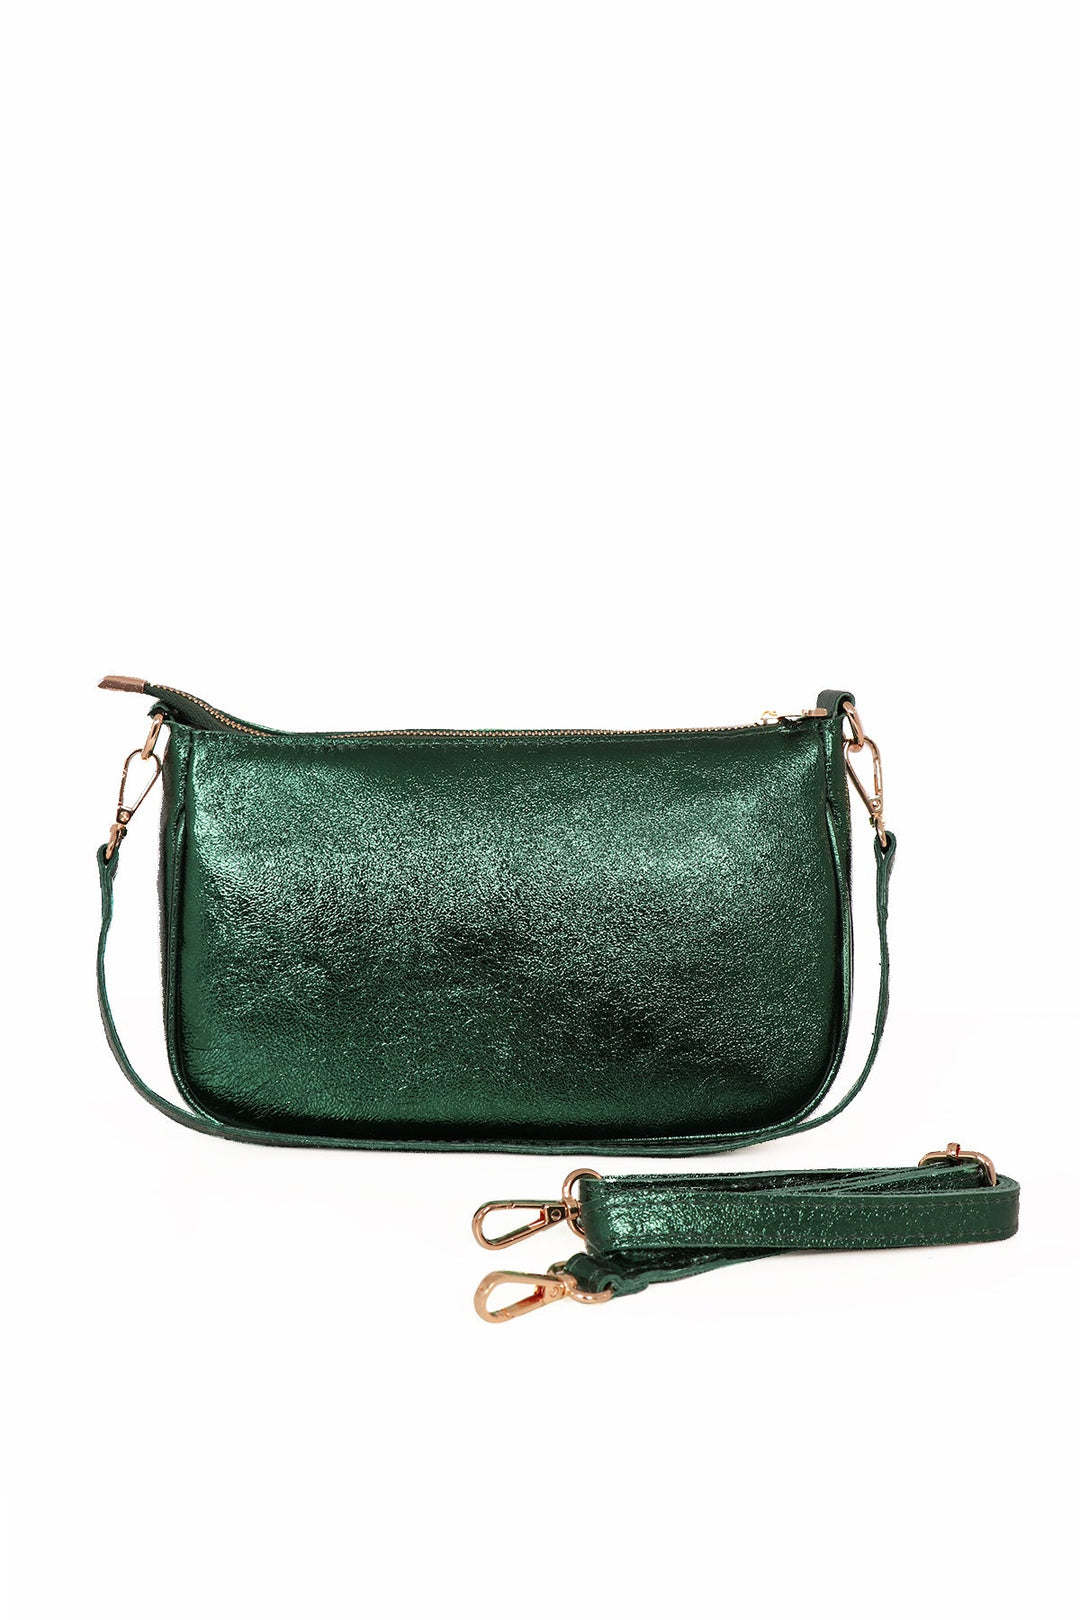 Metal Green Italian Leather Baguette Bag